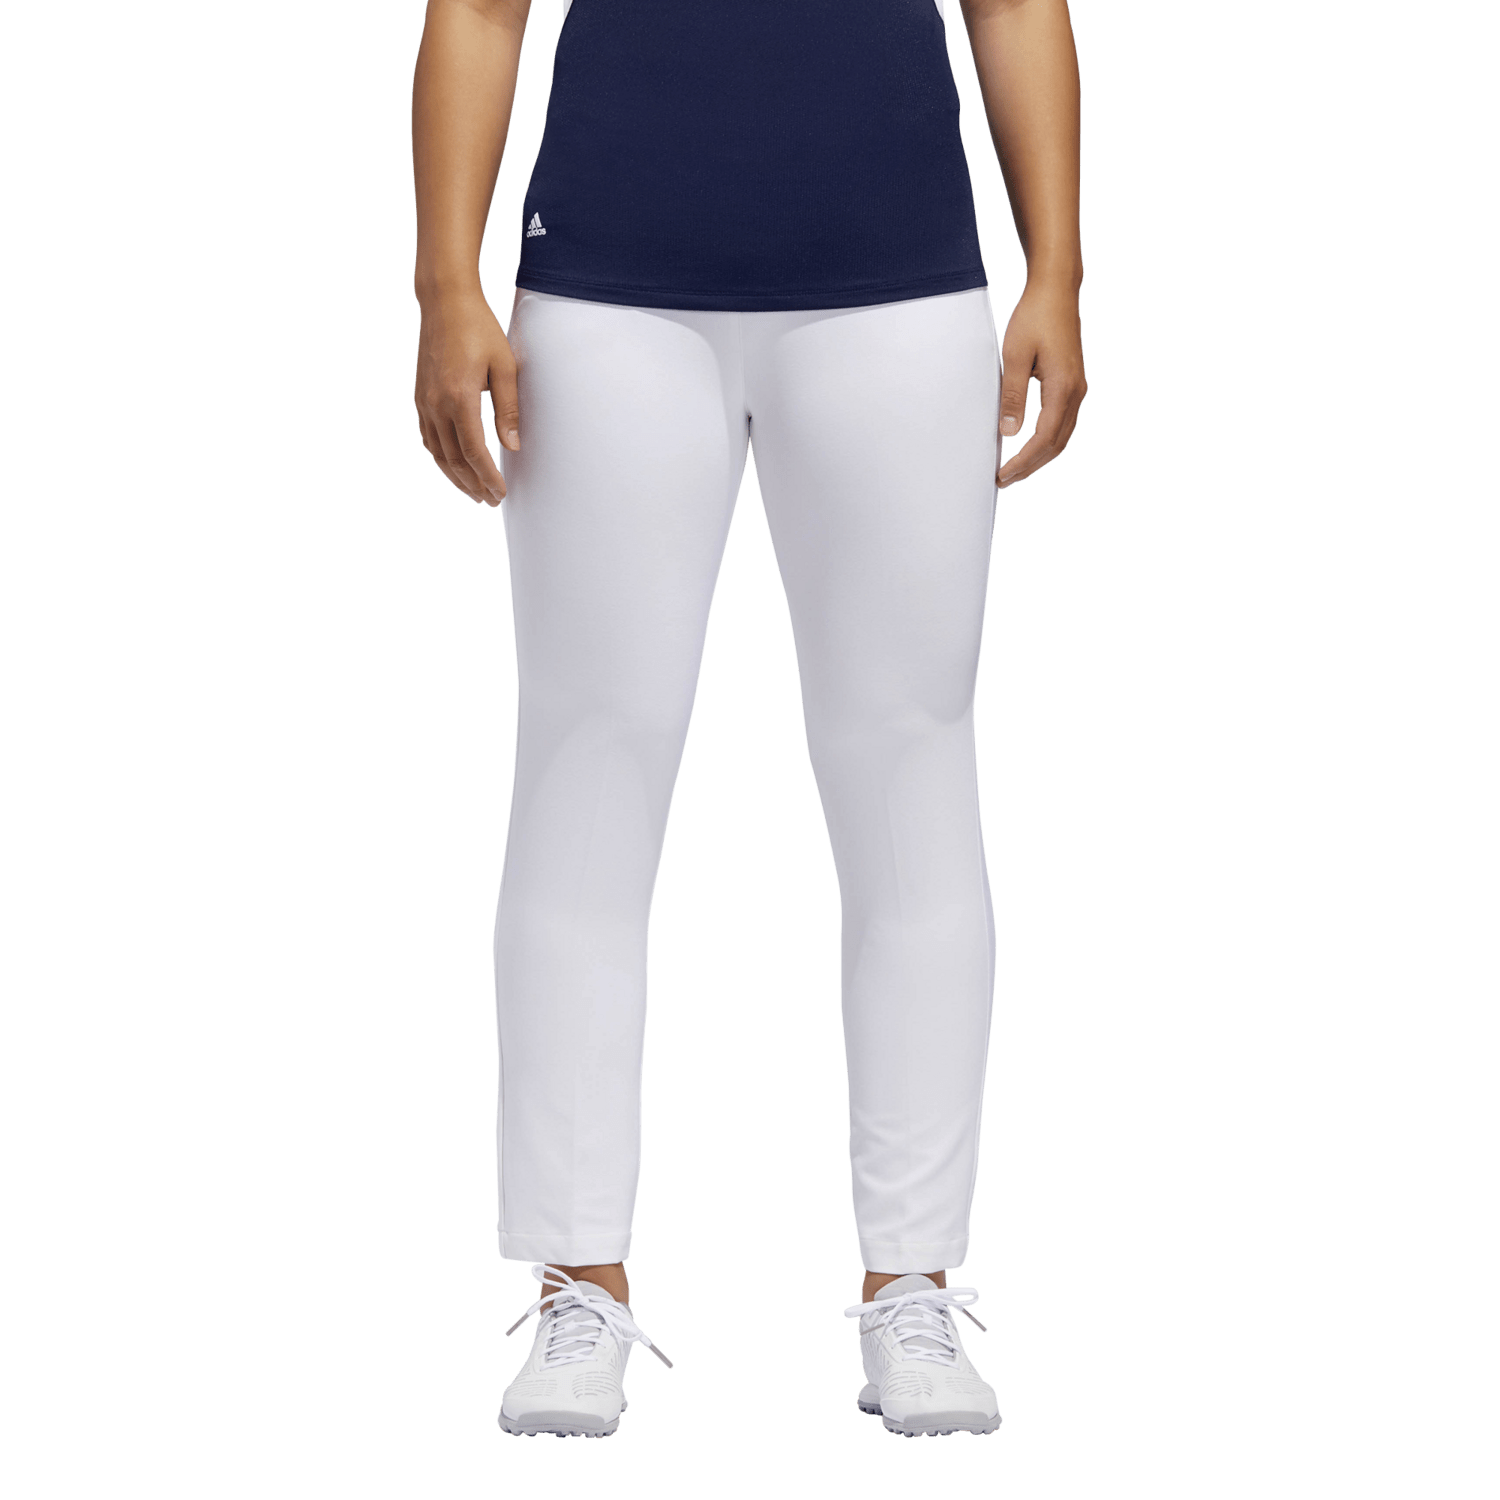 nike women's golf apparel sale